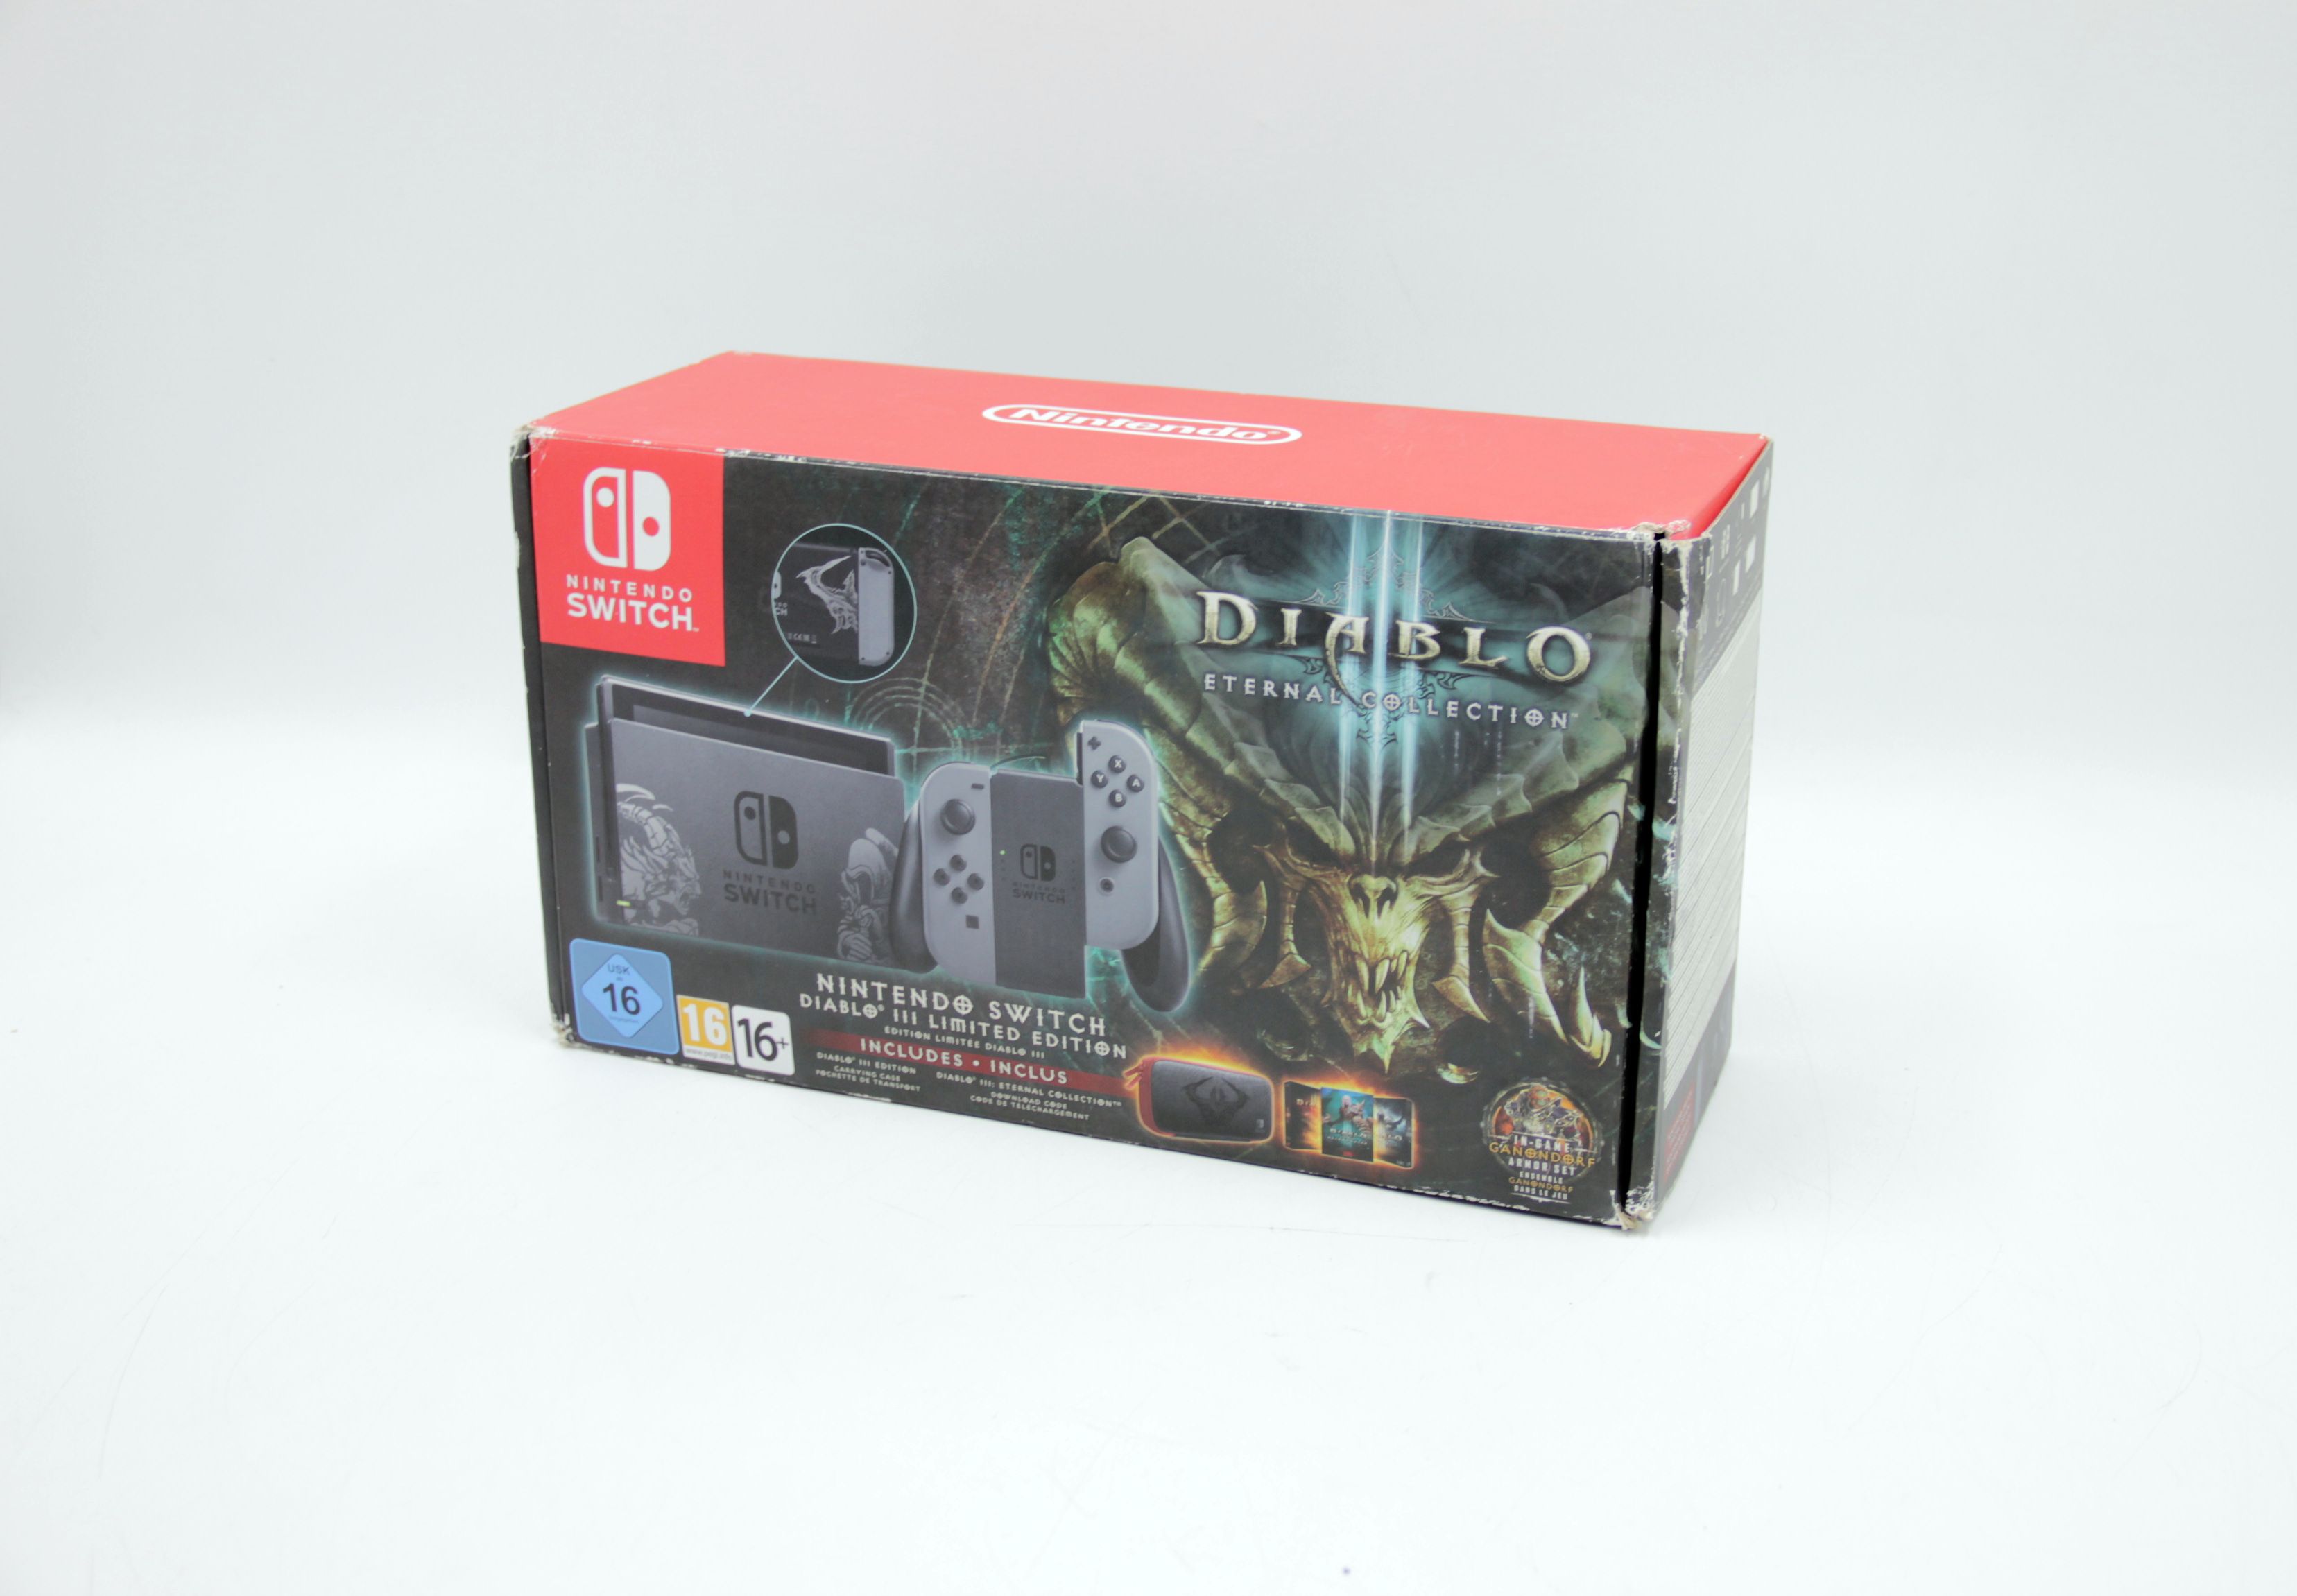 Nintendo switch diablo 3. Diablo 3 Nintendo Switch коробка. Nintendo Switch Diablo 3 Limited Edition. Коробка Diablo IV коллекционная коробка. Nintendo Switch первая ревизия Дьябло.